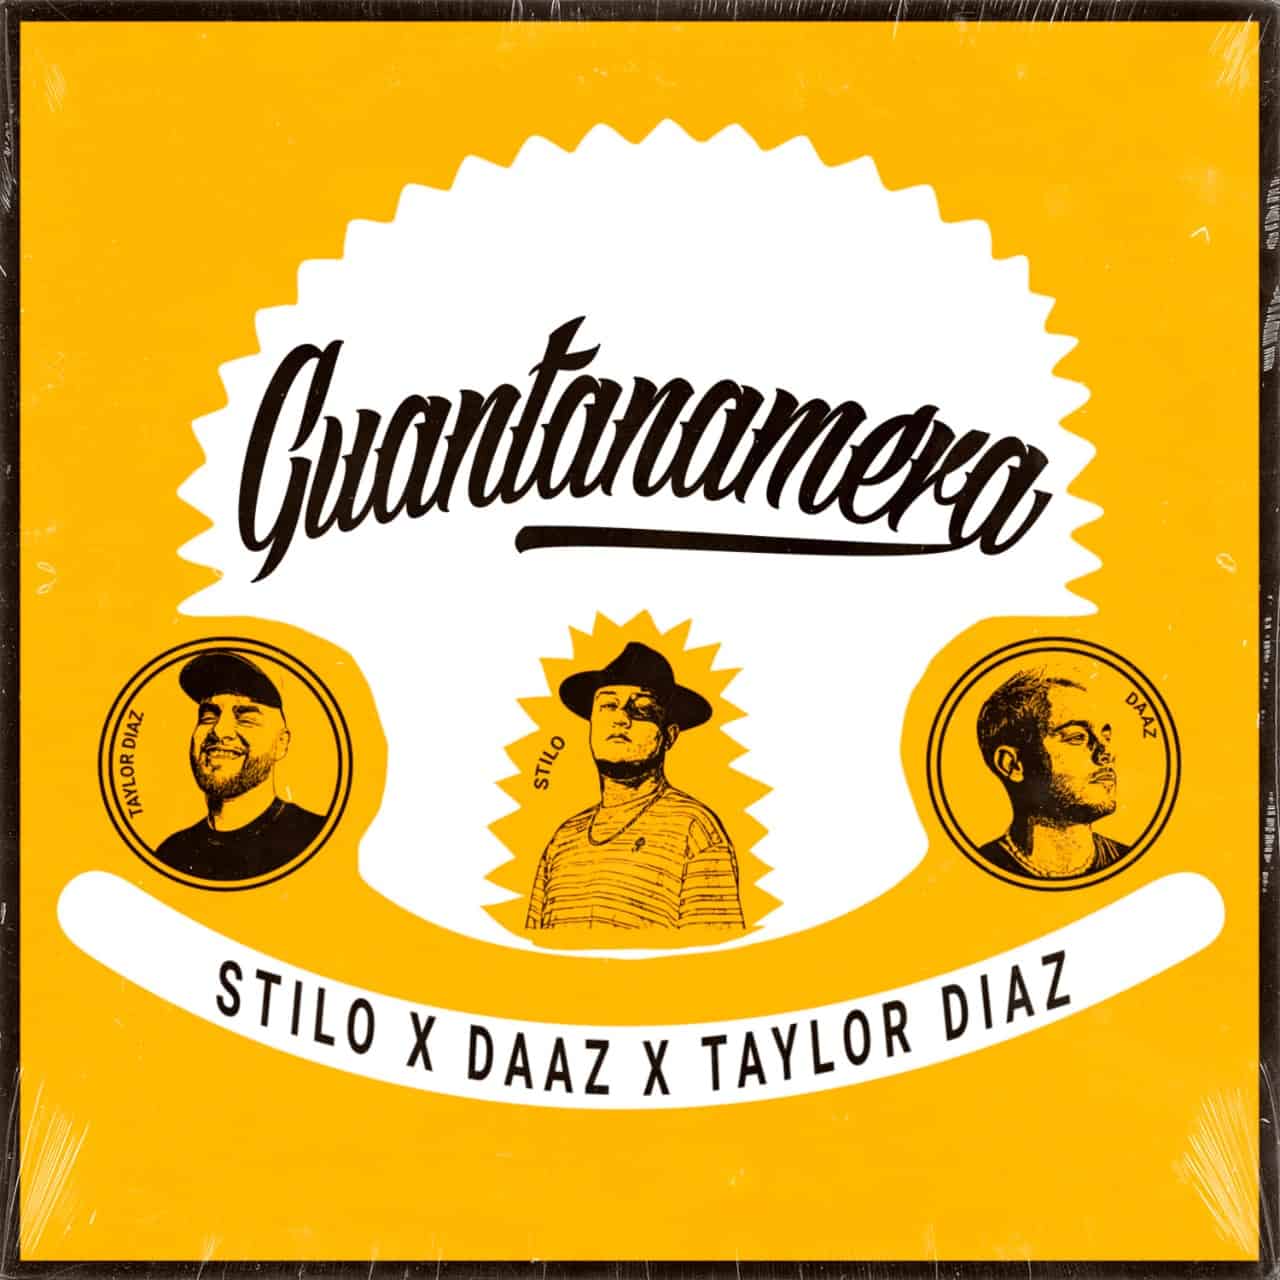 Stilo, DAAZ y Taylor Díaz nos invitan a bailar y a gozar al ritmo de “Guantanamera” su nuevo sencillo.